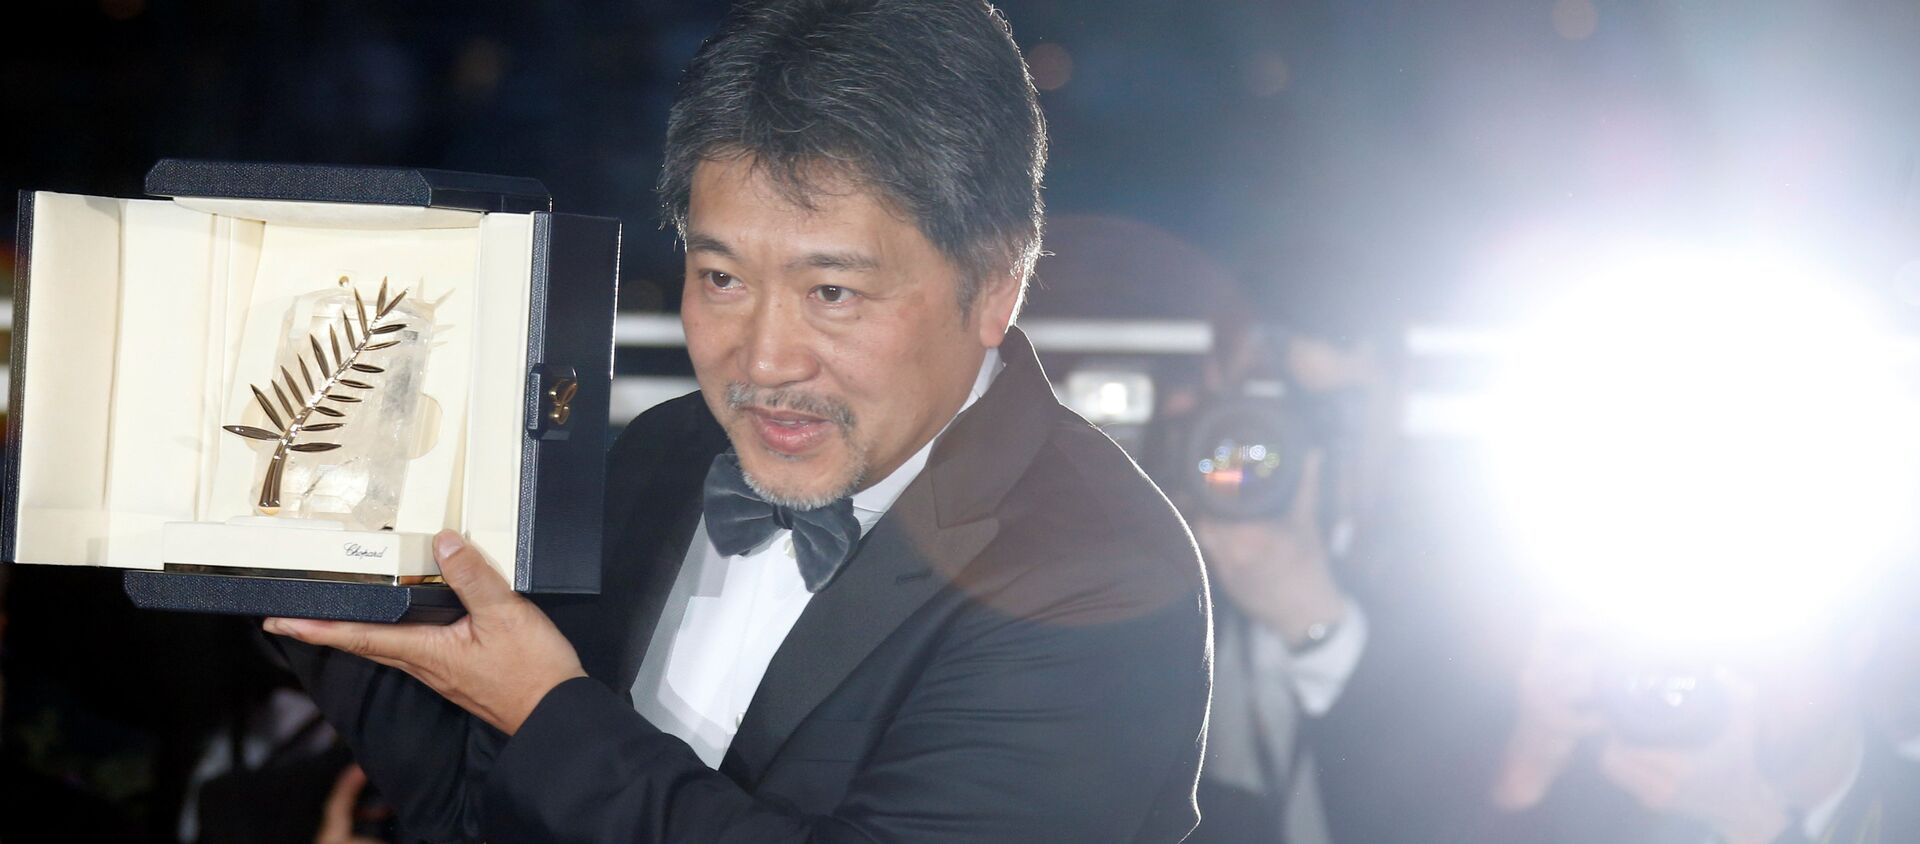 Cannes Film Festivali'nde Altın Palmiye Ödülü Hirokazu Kore-eda’nın yönettiği 'Shoplifters' filmine verildi - Sputnik Türkiye, 1920, 20.05.2018